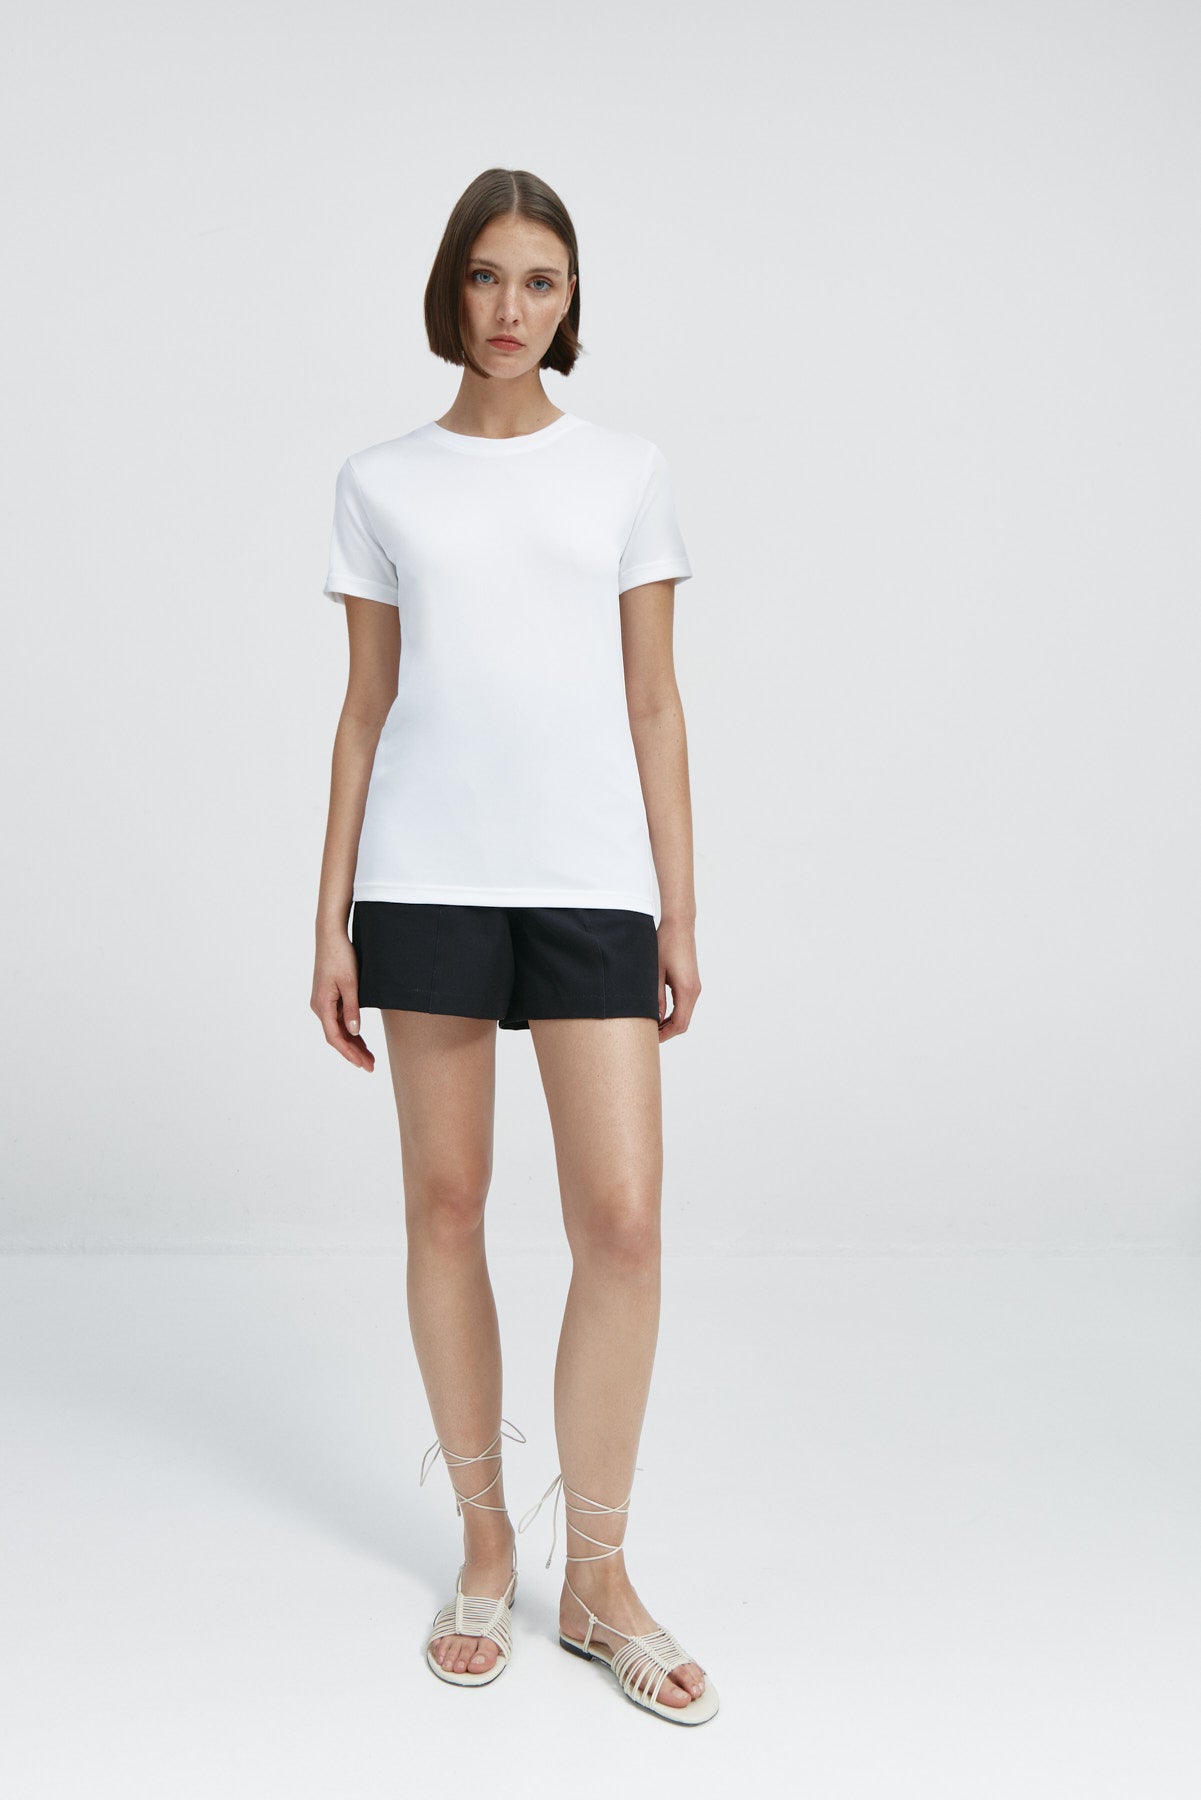 Camiseta básica de mujer blanca de manga corta, antiarrugas y antimanchas. Foto cuerpo entero